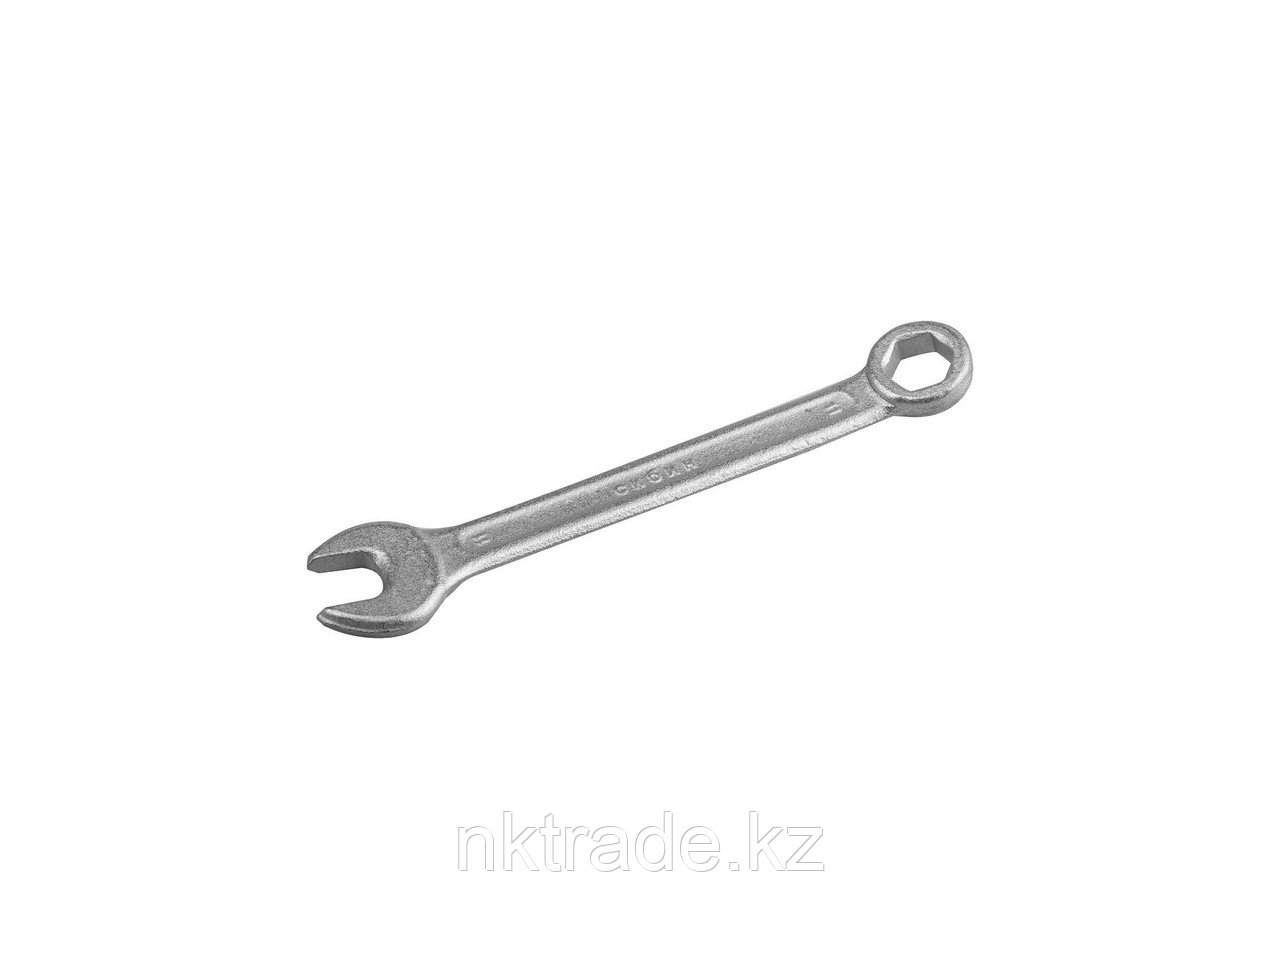 Комбинированный гаечный ключ 11 мм, СИБИН2707-11